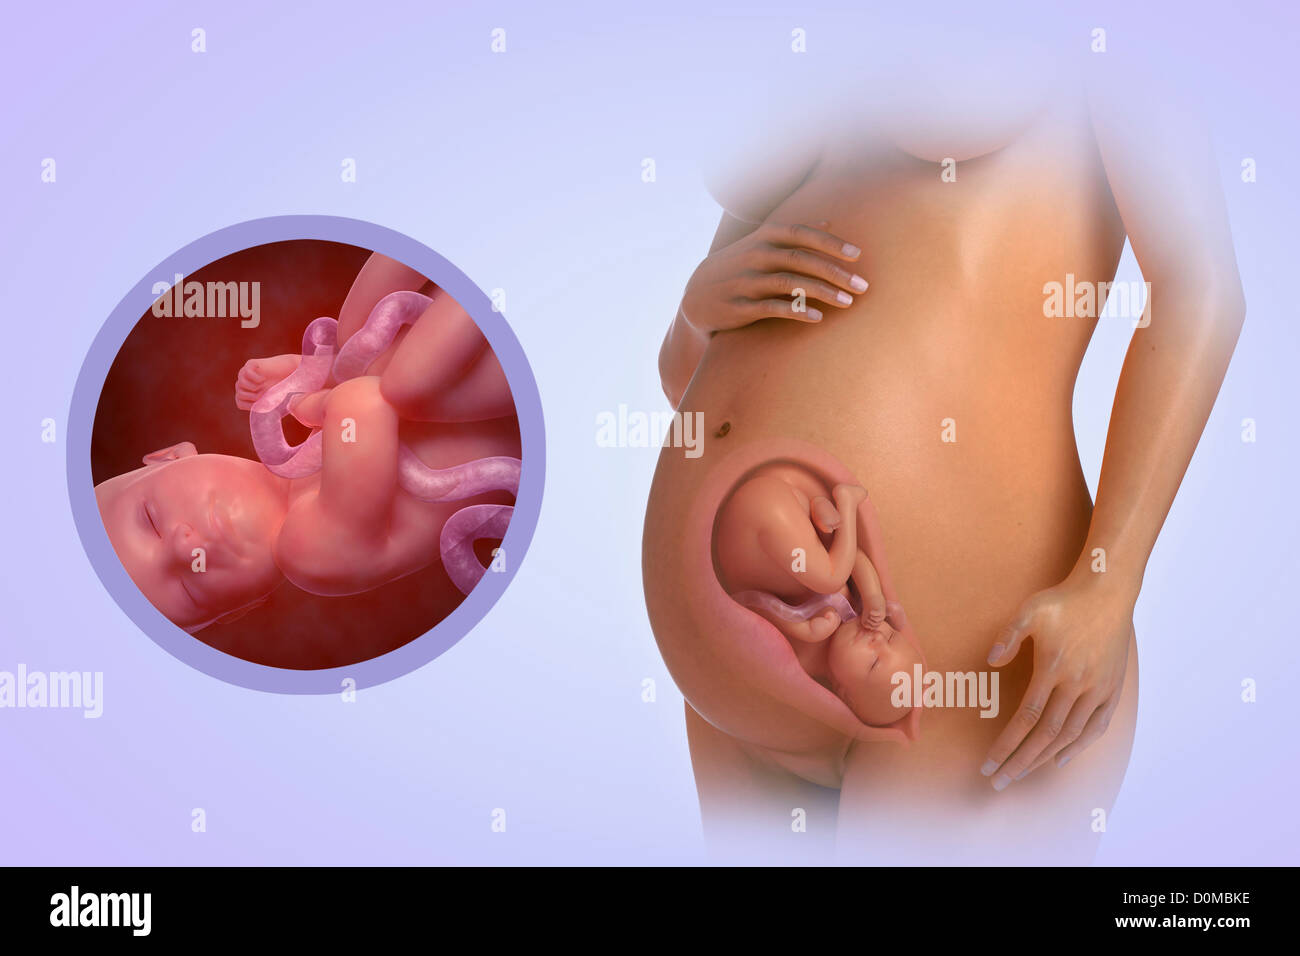 Un modelo humano mostrando el embarazo en la semana 33. Foto de stock